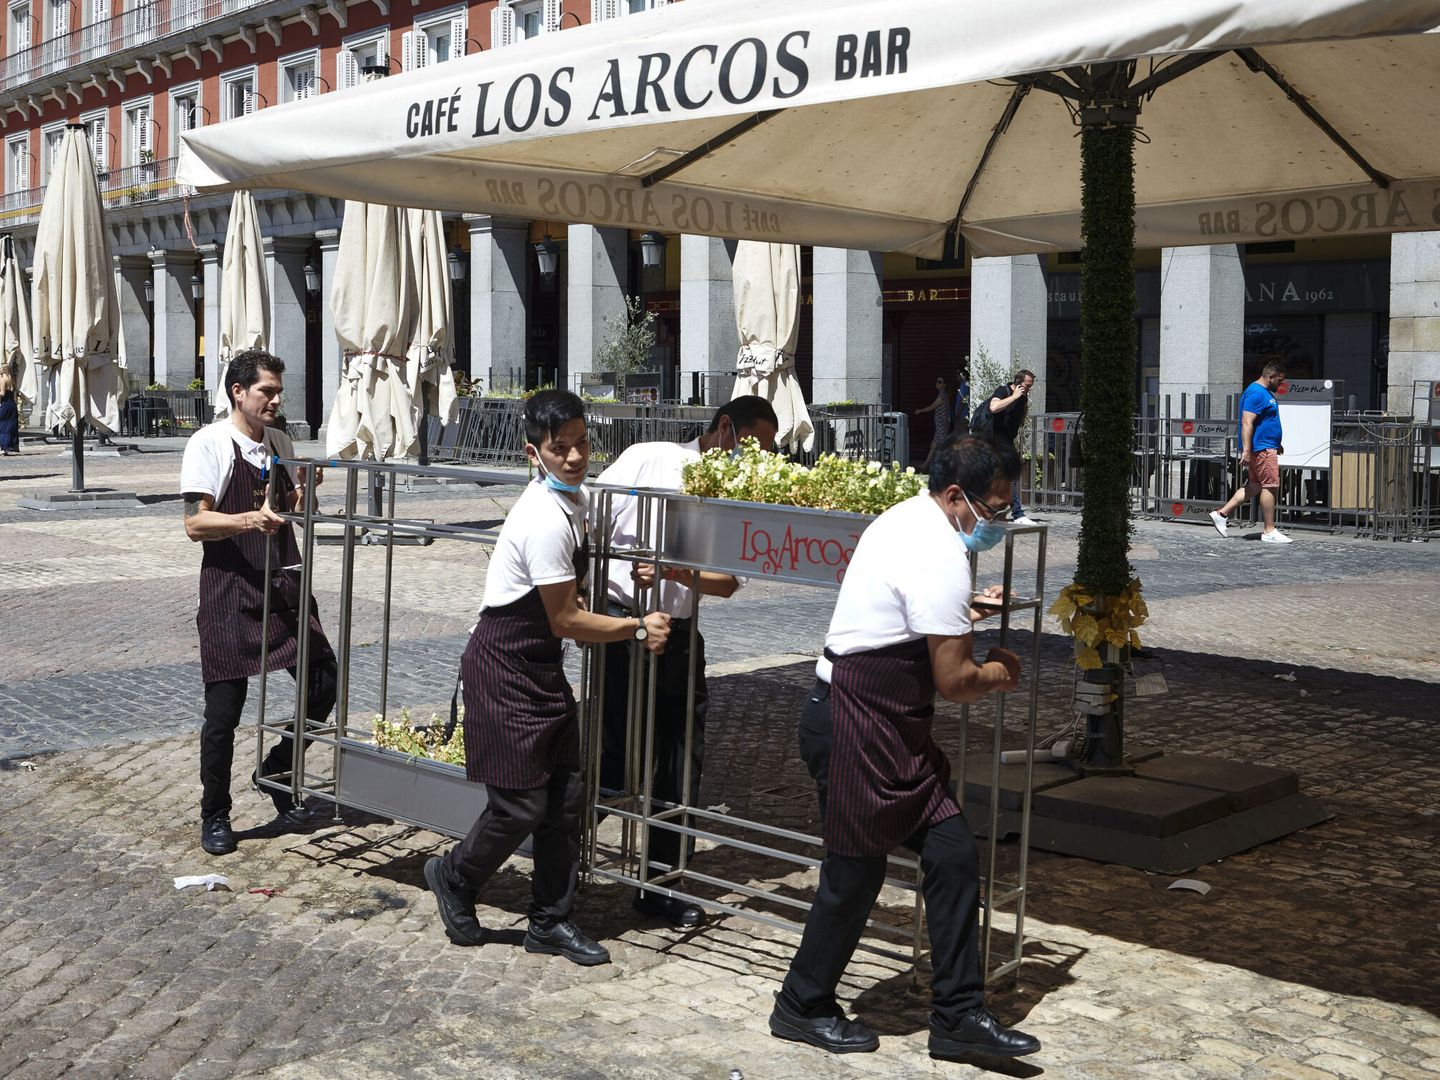 Hosteleros de la plaza Mayor, que esta tarde han tenido que retirar sus terrazas por 'motivos de seguridad'. (EFE/Luca Piergiovanni)